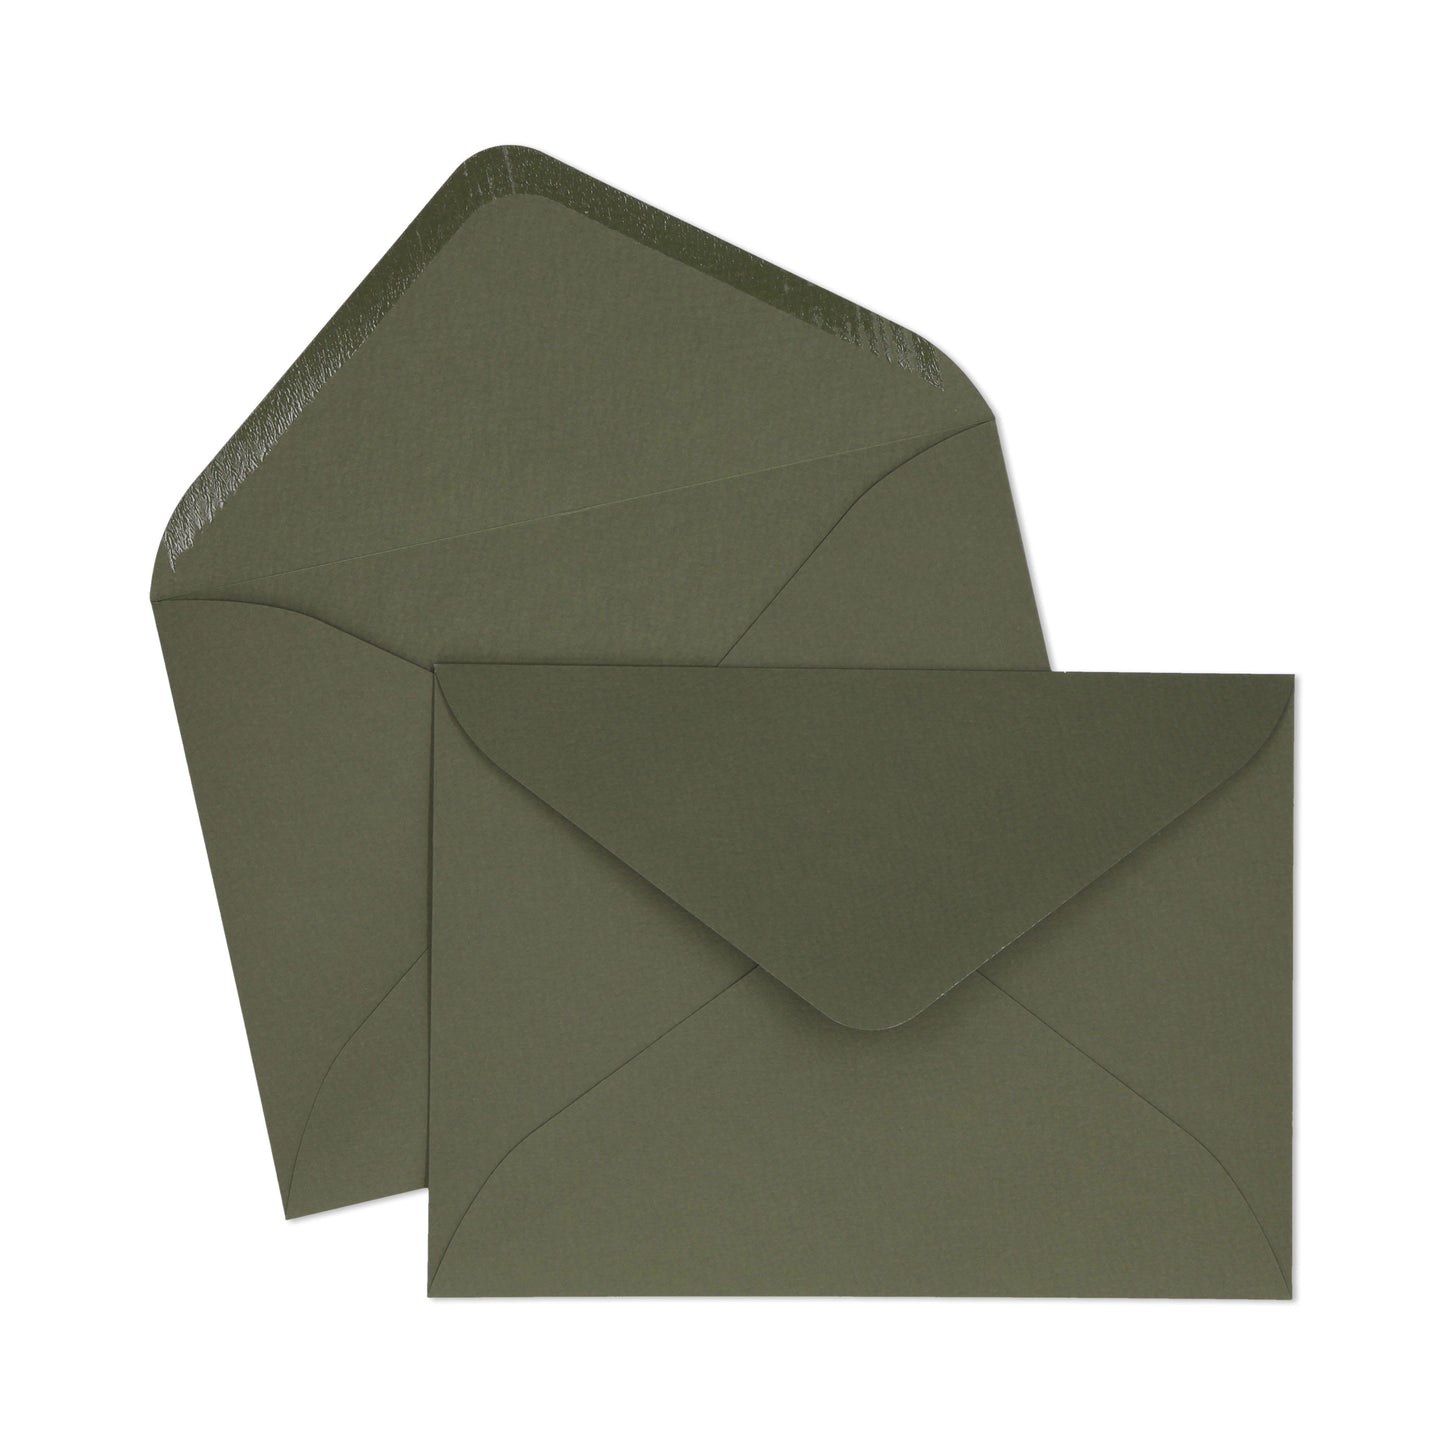 C5 Olive Green Envelope - 10 units